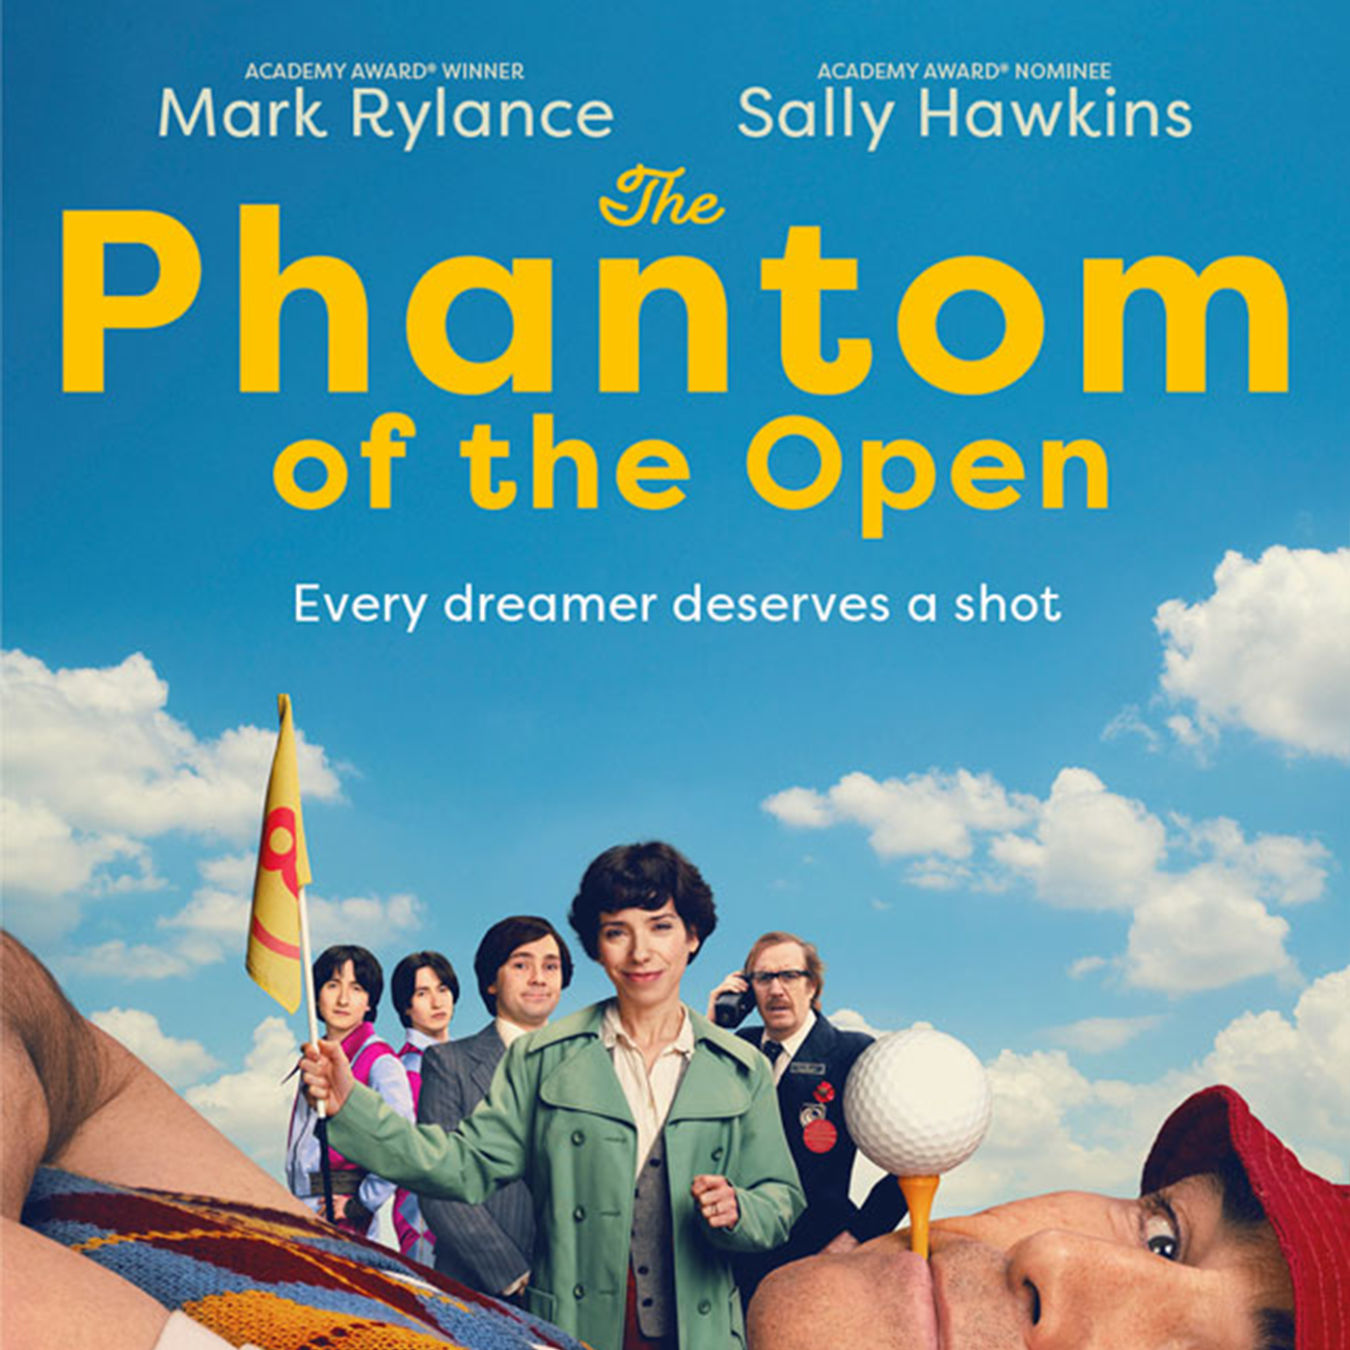 poster for Phantom of the Open